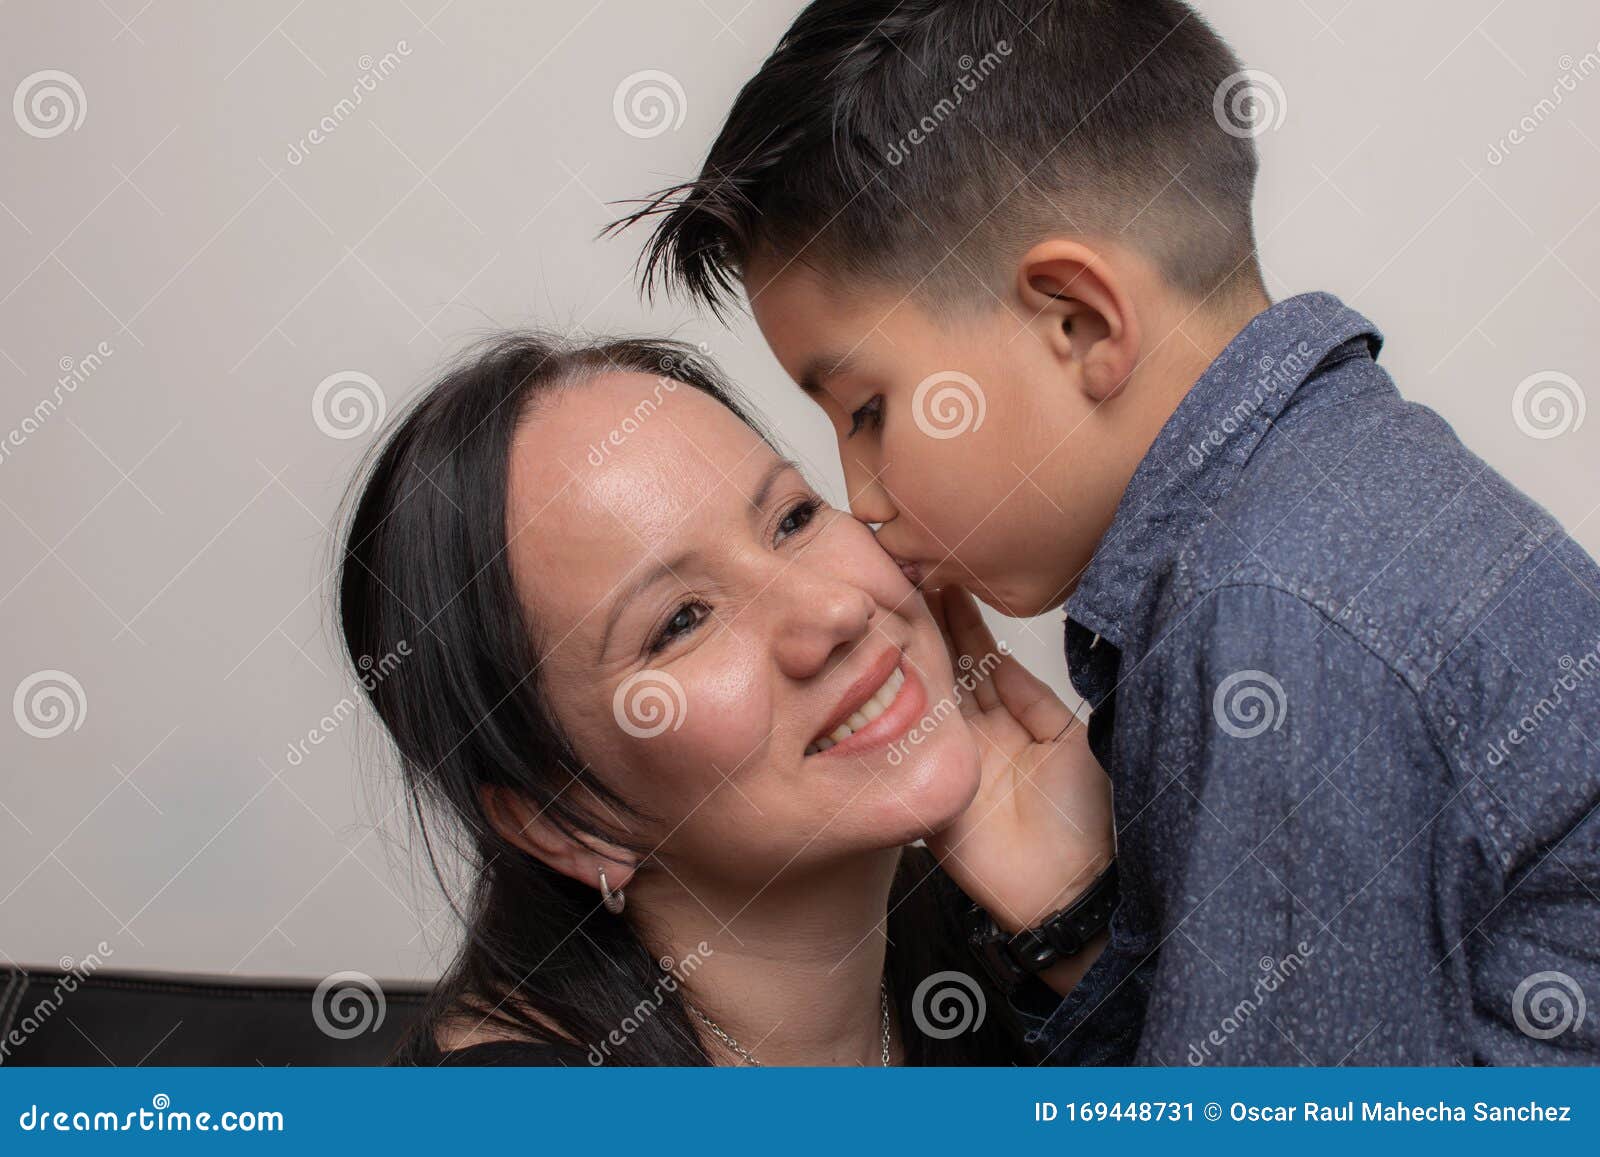 Отсосала в 12 лет. Инцестуальные семьи. Ребенок целует маму в щечку. Порномама и несовершеннолетний сын.